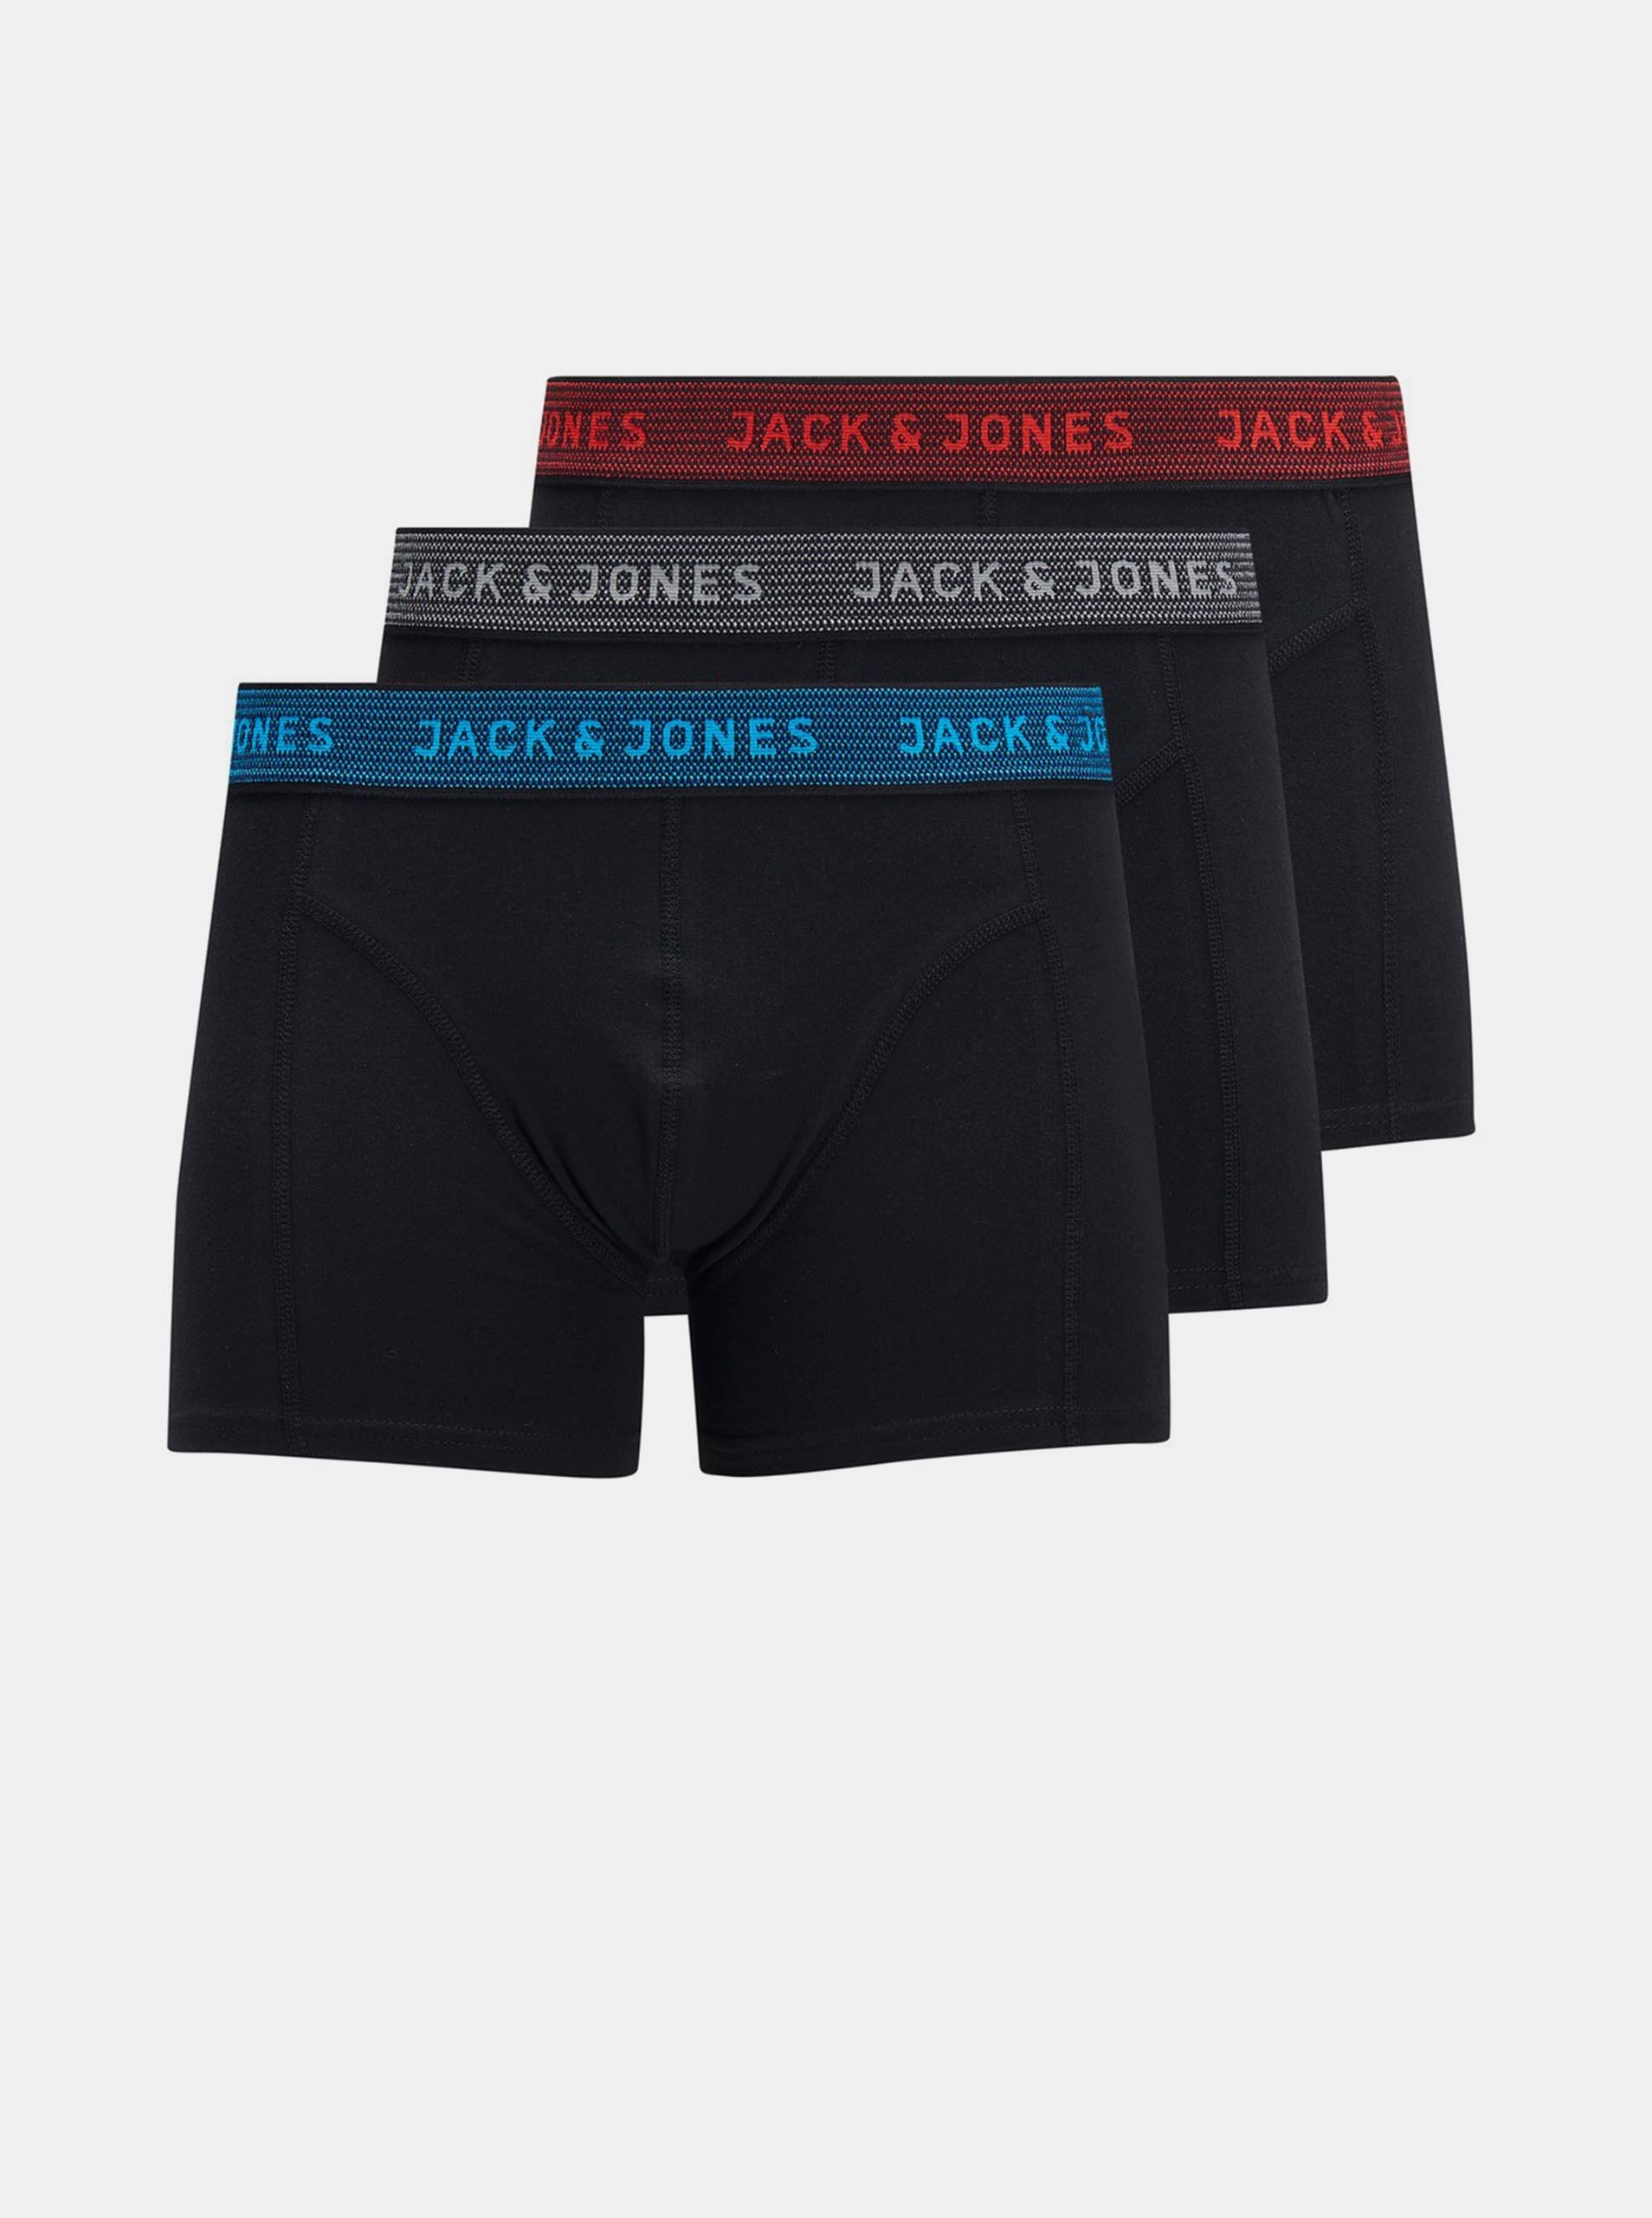 Fotografie Sada tří černých boxerek Jack & Jones